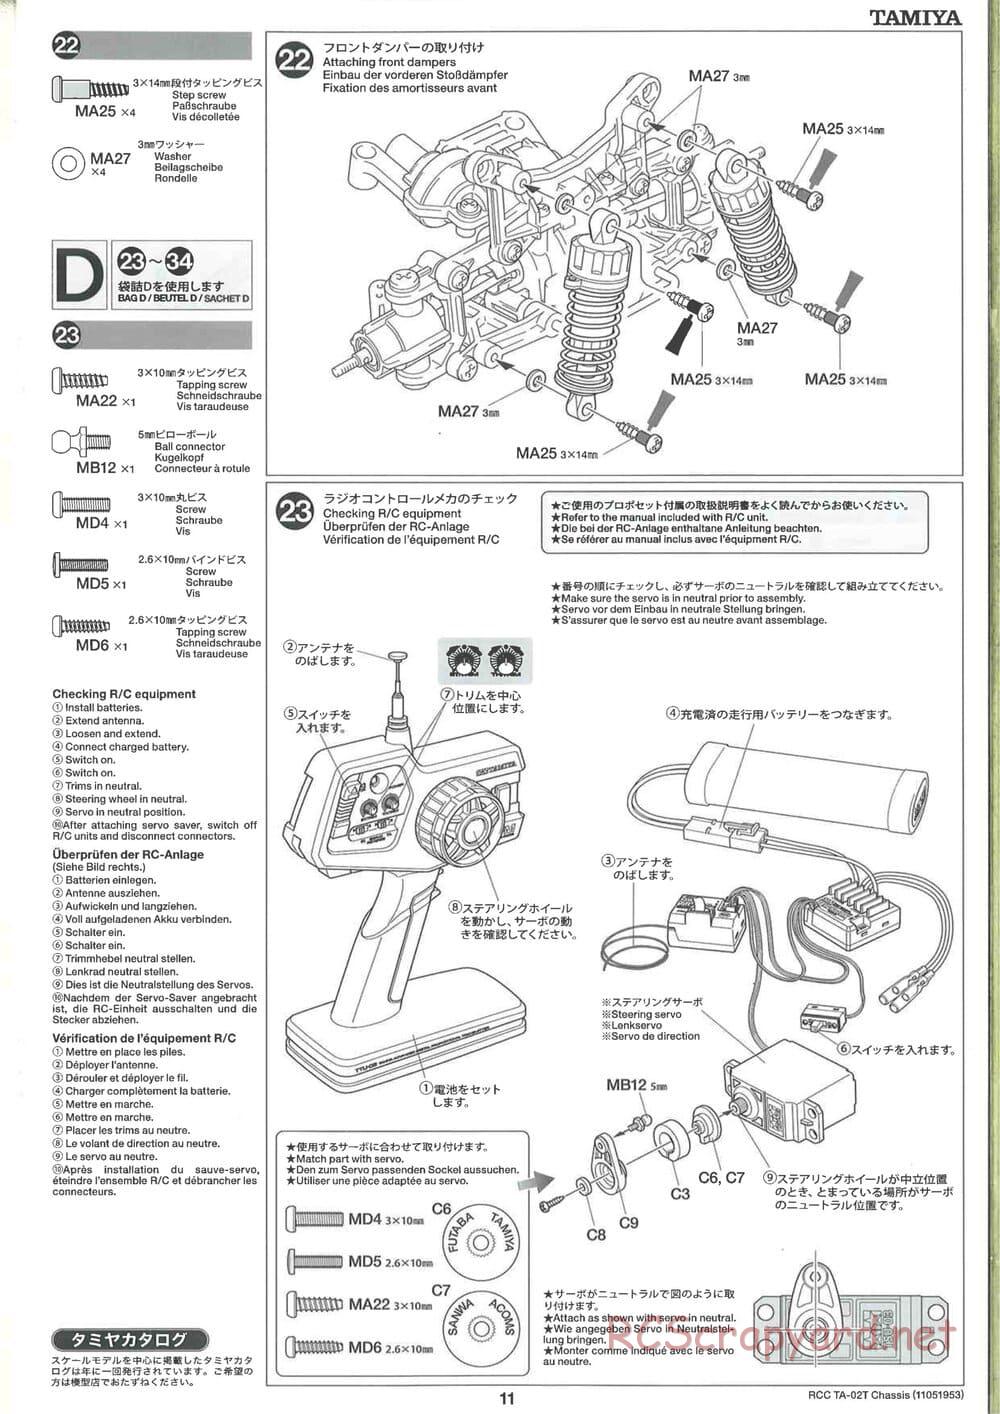 Tamiya - TA-02T Chassis - Manual - Page 11